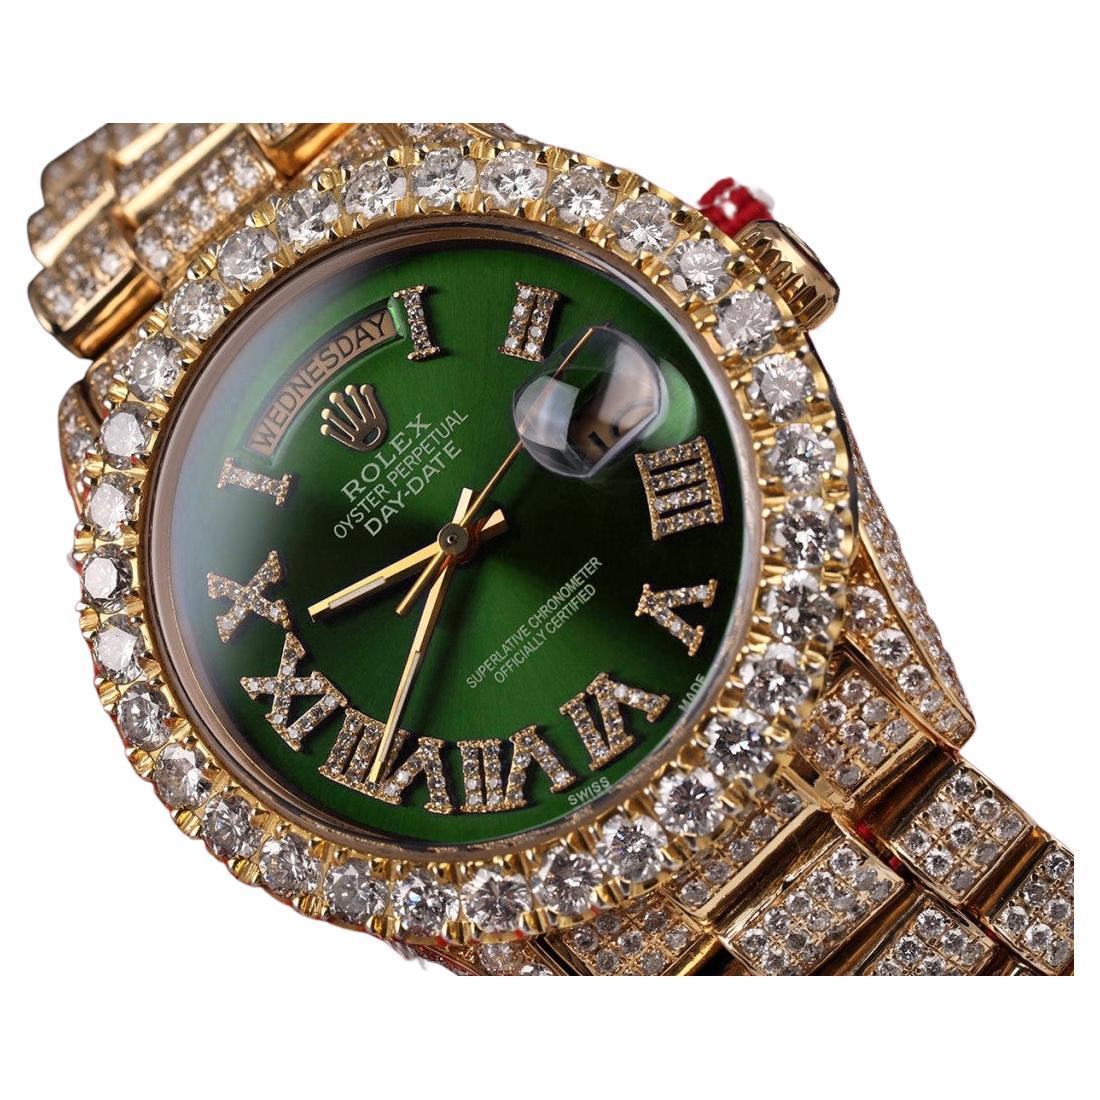 Rolex Montre présidentielle à cadran romain vert 18038 avec diamants, 36 mm